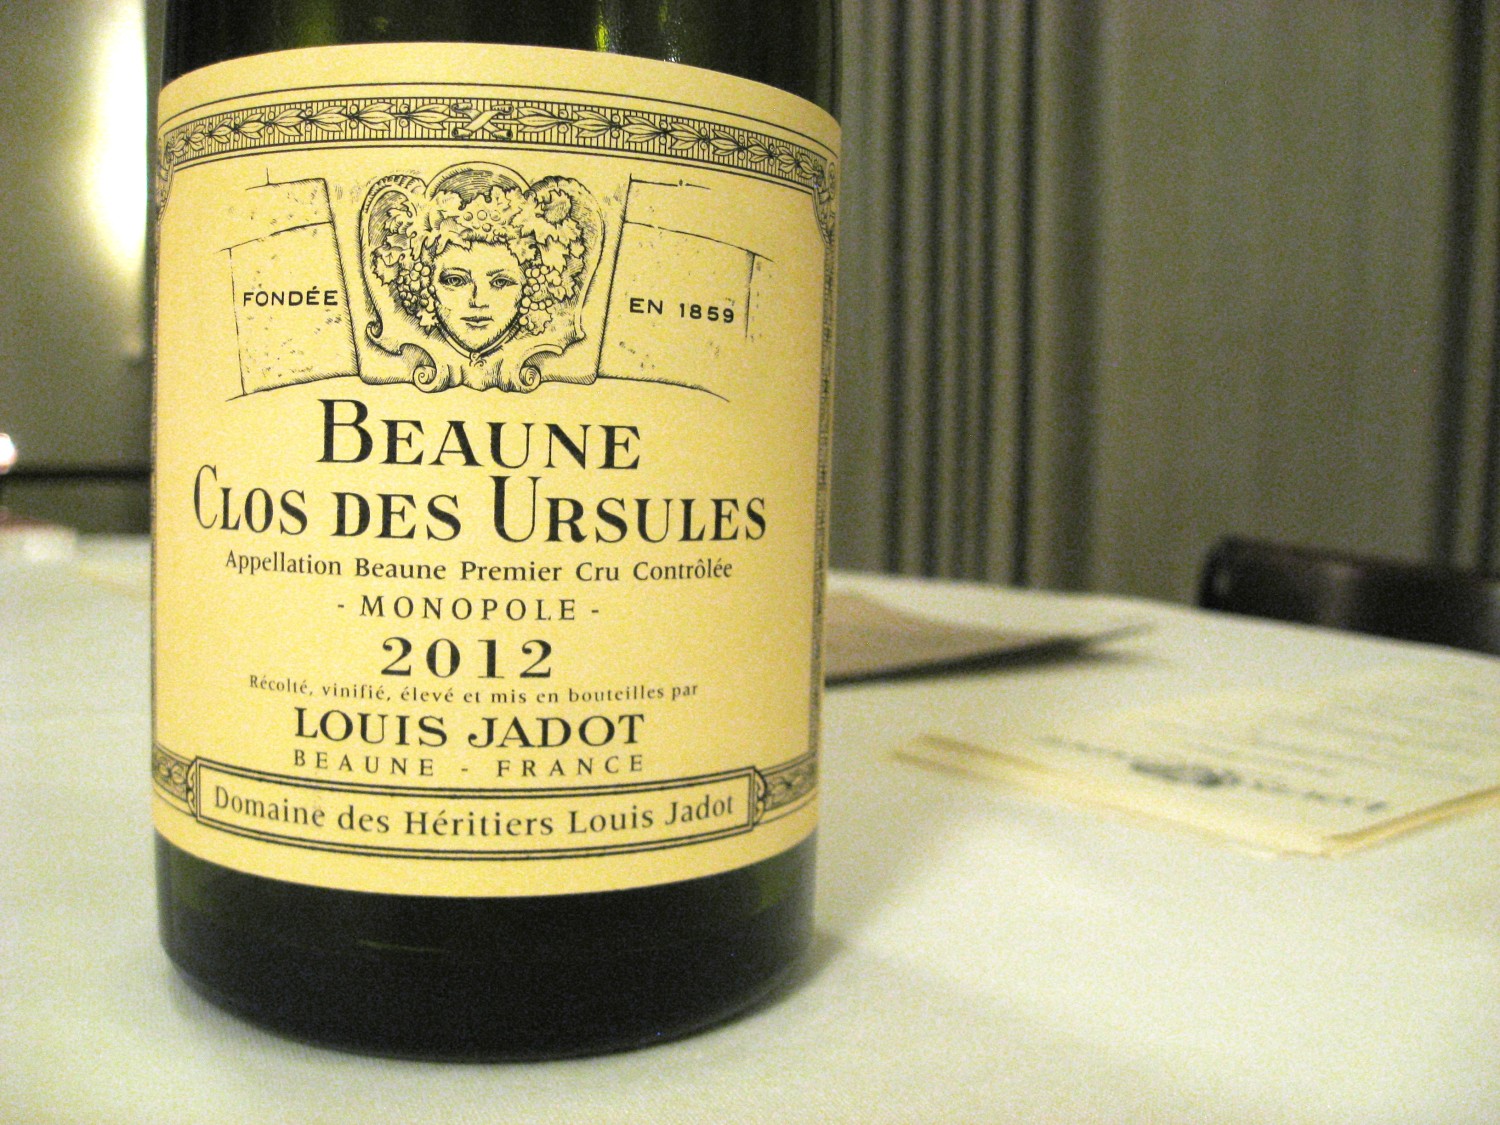 Domaine des Héritiers Louis Jadot, Beaune Premiere Cru Clos des Ursules 2012, Monopole, Beaune, France, Wine Casual